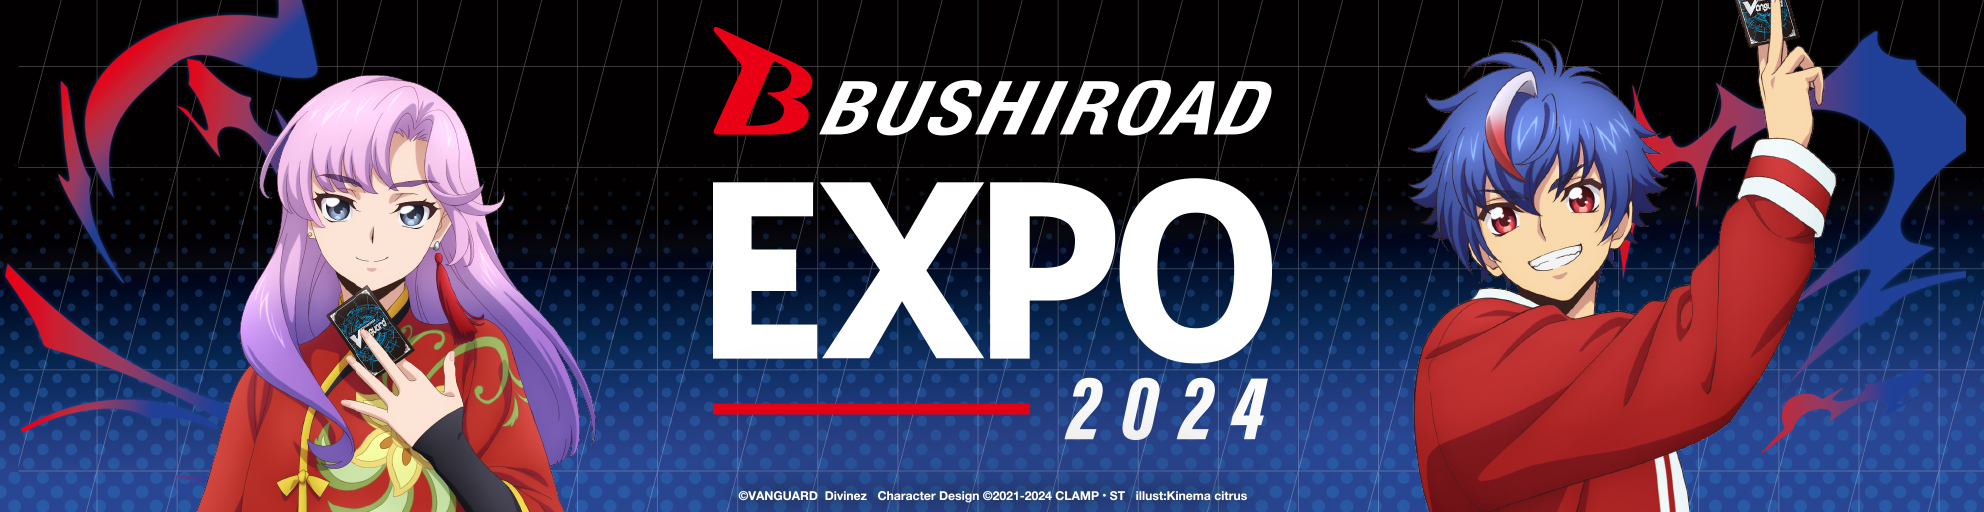 Bushiroad Expo 2024